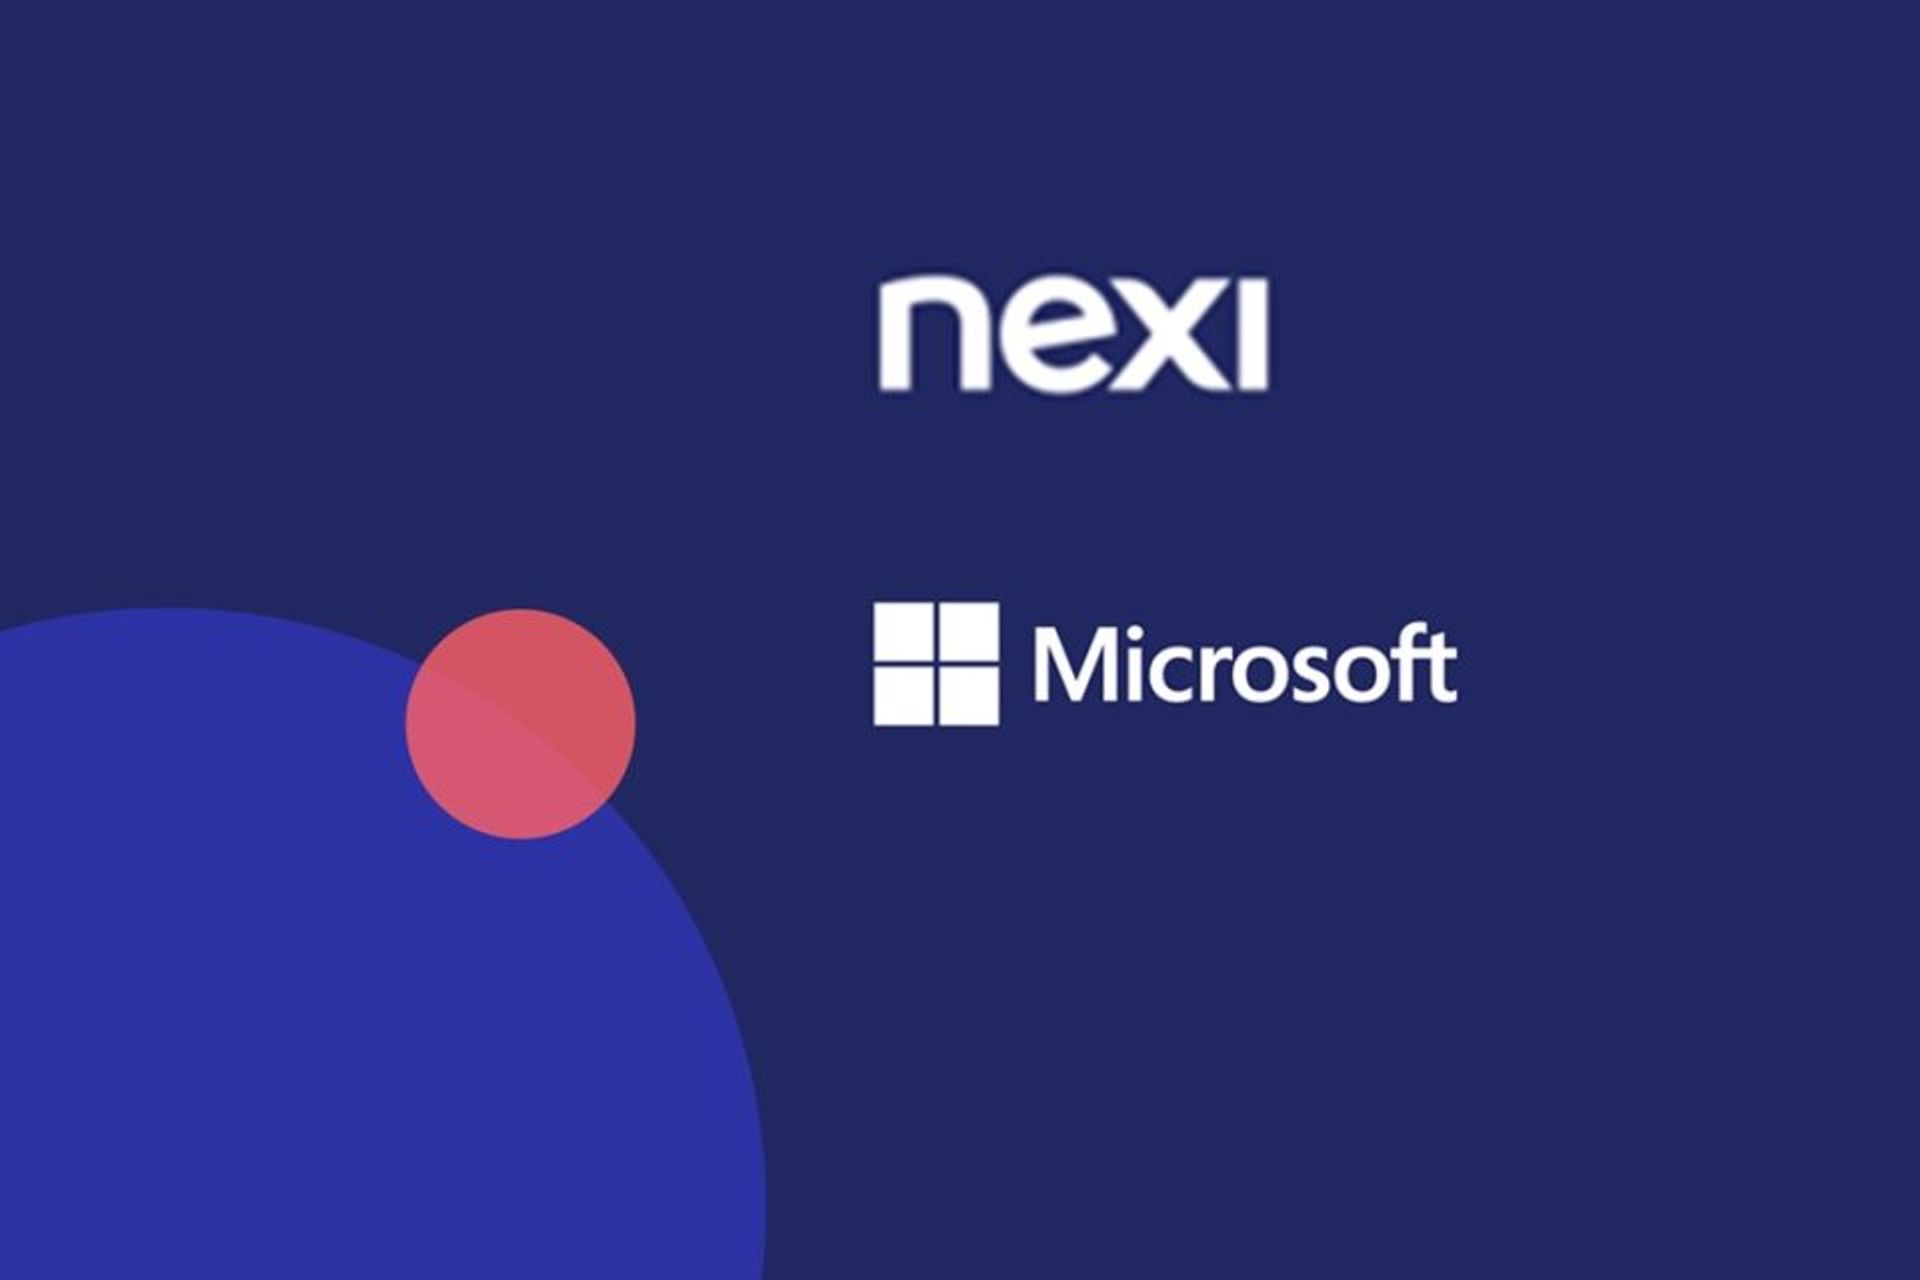 Nuova collaborazione fra Nexi, paytech europea che opera in diversi mercati, e il colosso della digitalizzazione Microsoft